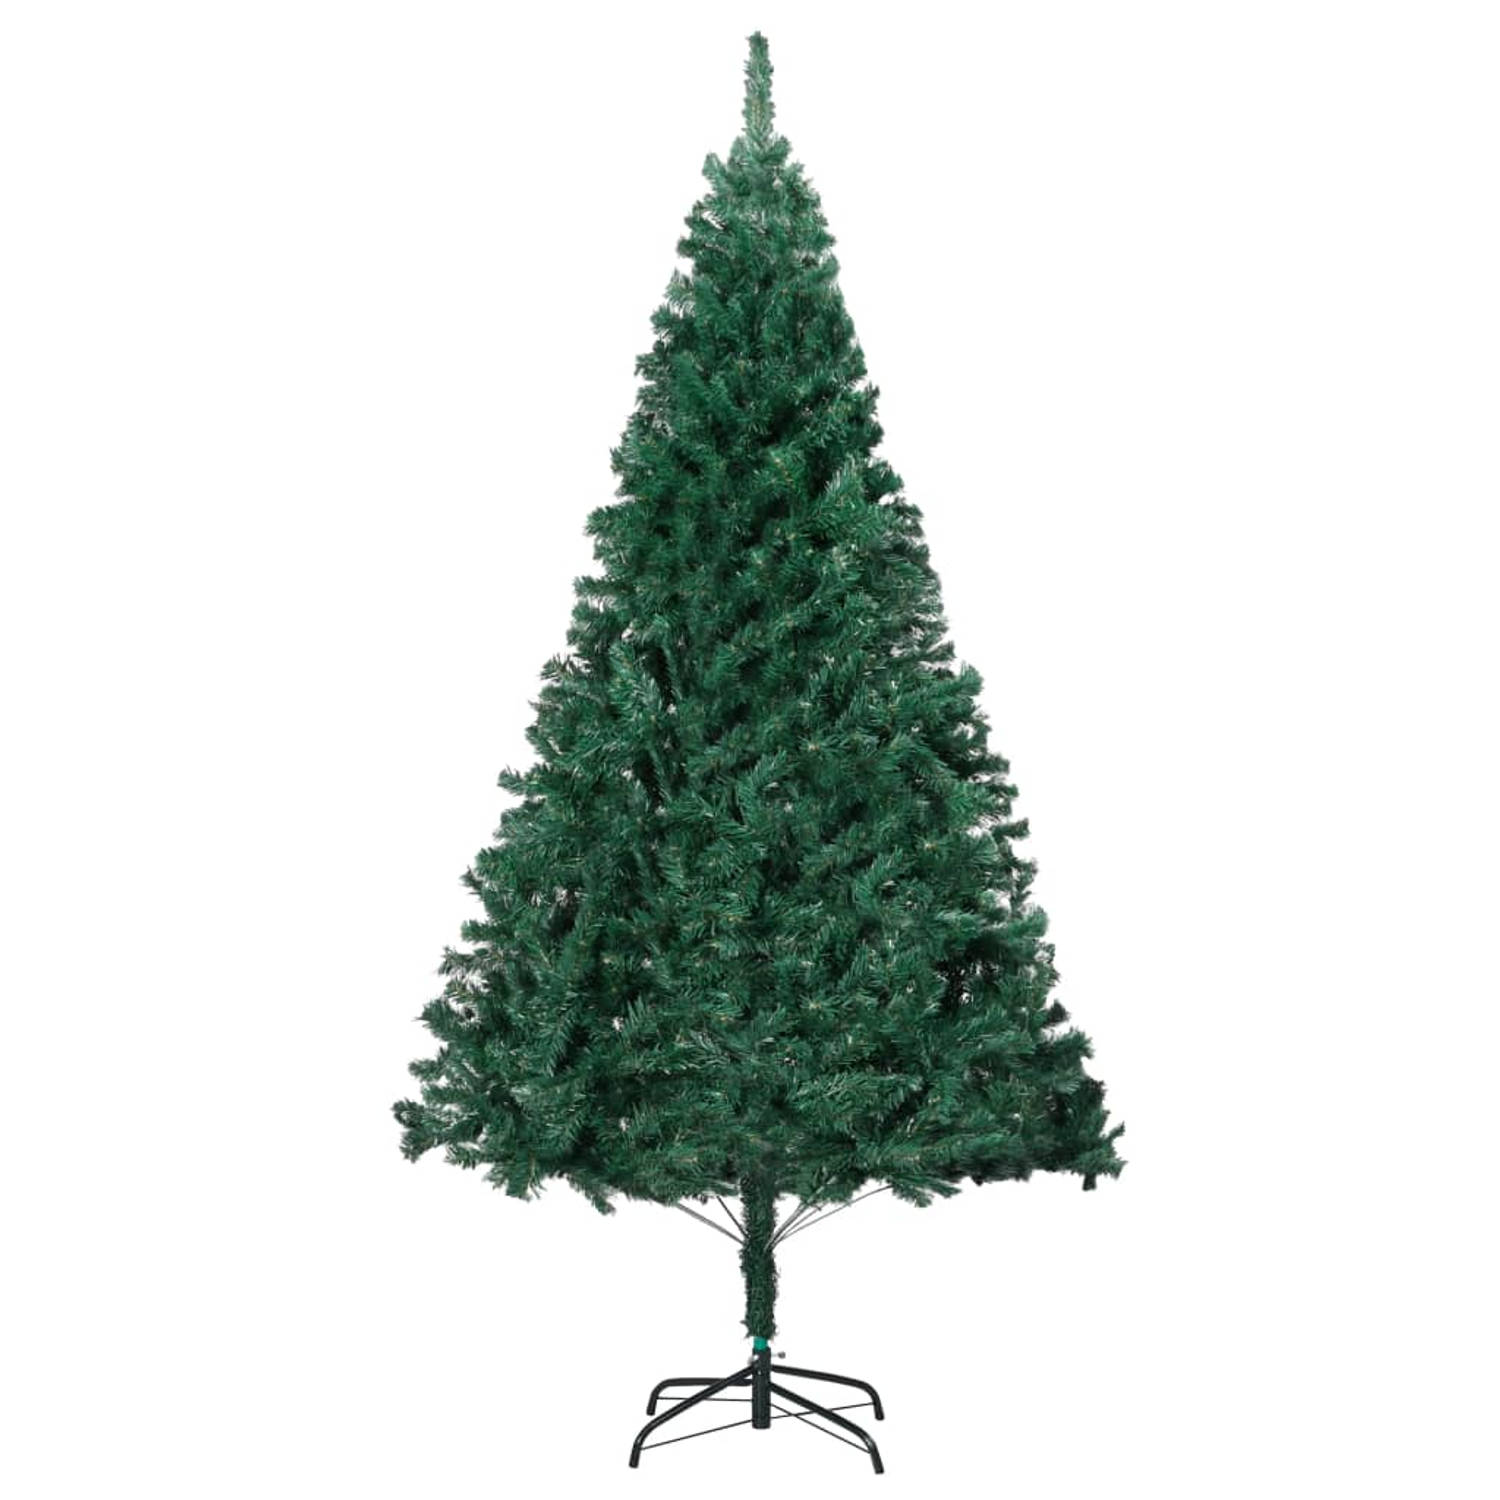 The Living Store Kunstkerstboom met dikke takken 180 cm PVC groen - Decoratieve kerstboom